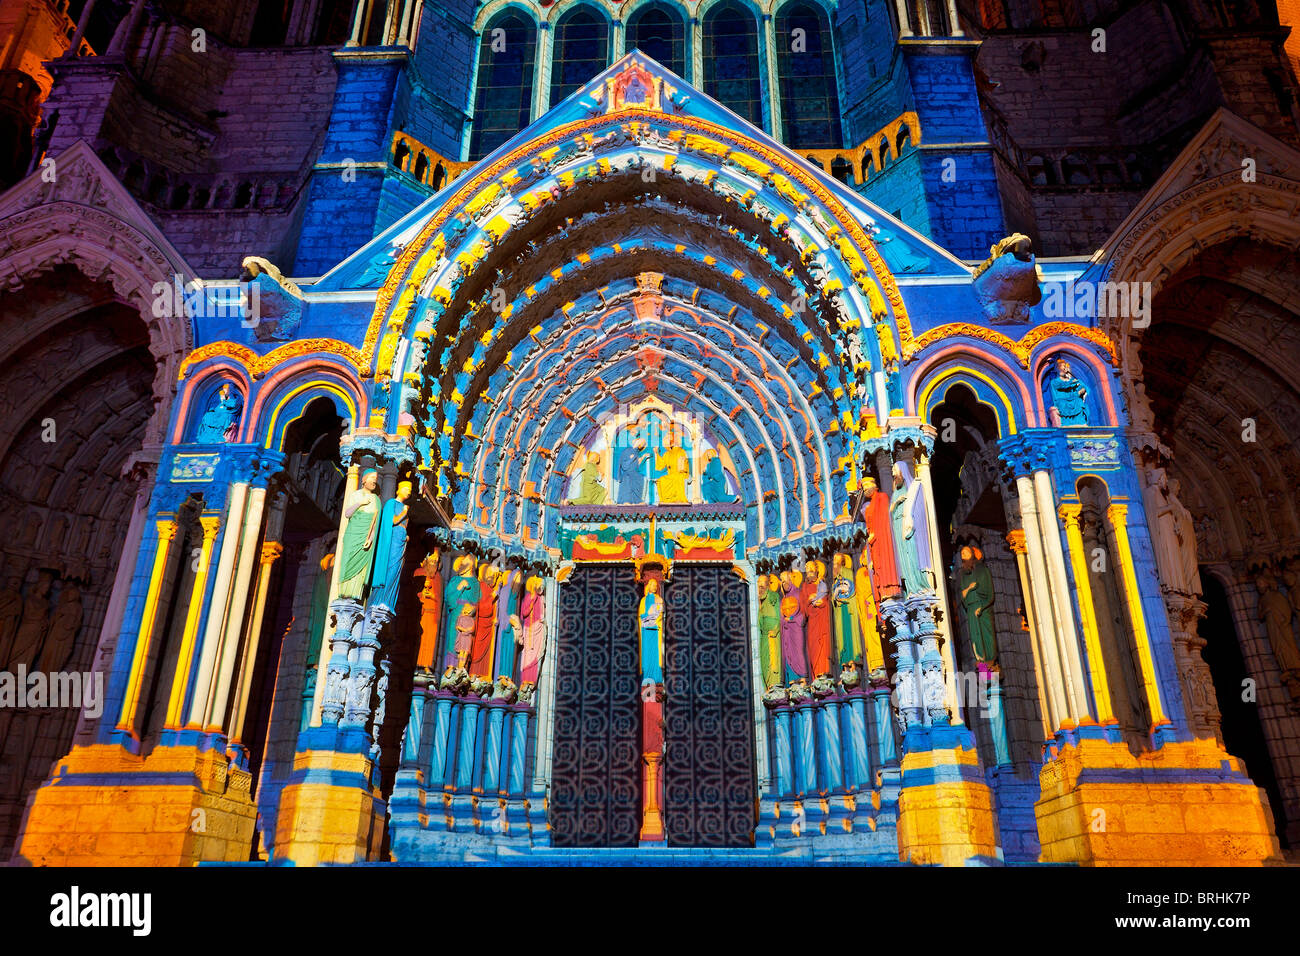 Notre Dame de la cathédrale de Chartres allumé Banque D'Images